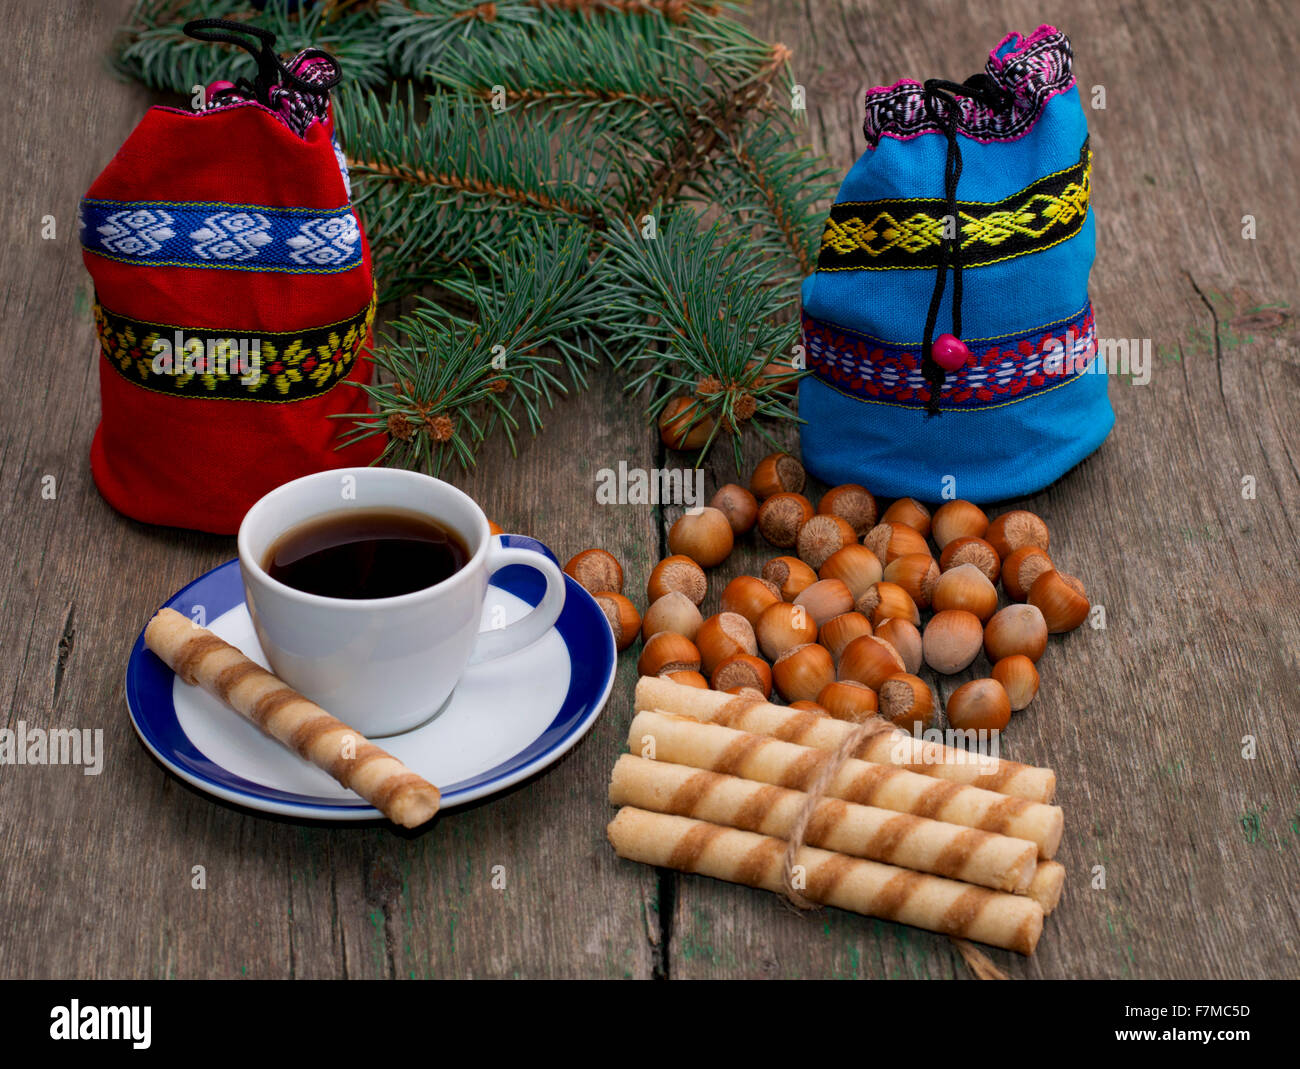 Sac cadeau bleu et rouge, le café, les nucules, reliant des cookies et sapin-tree branch Banque D'Images